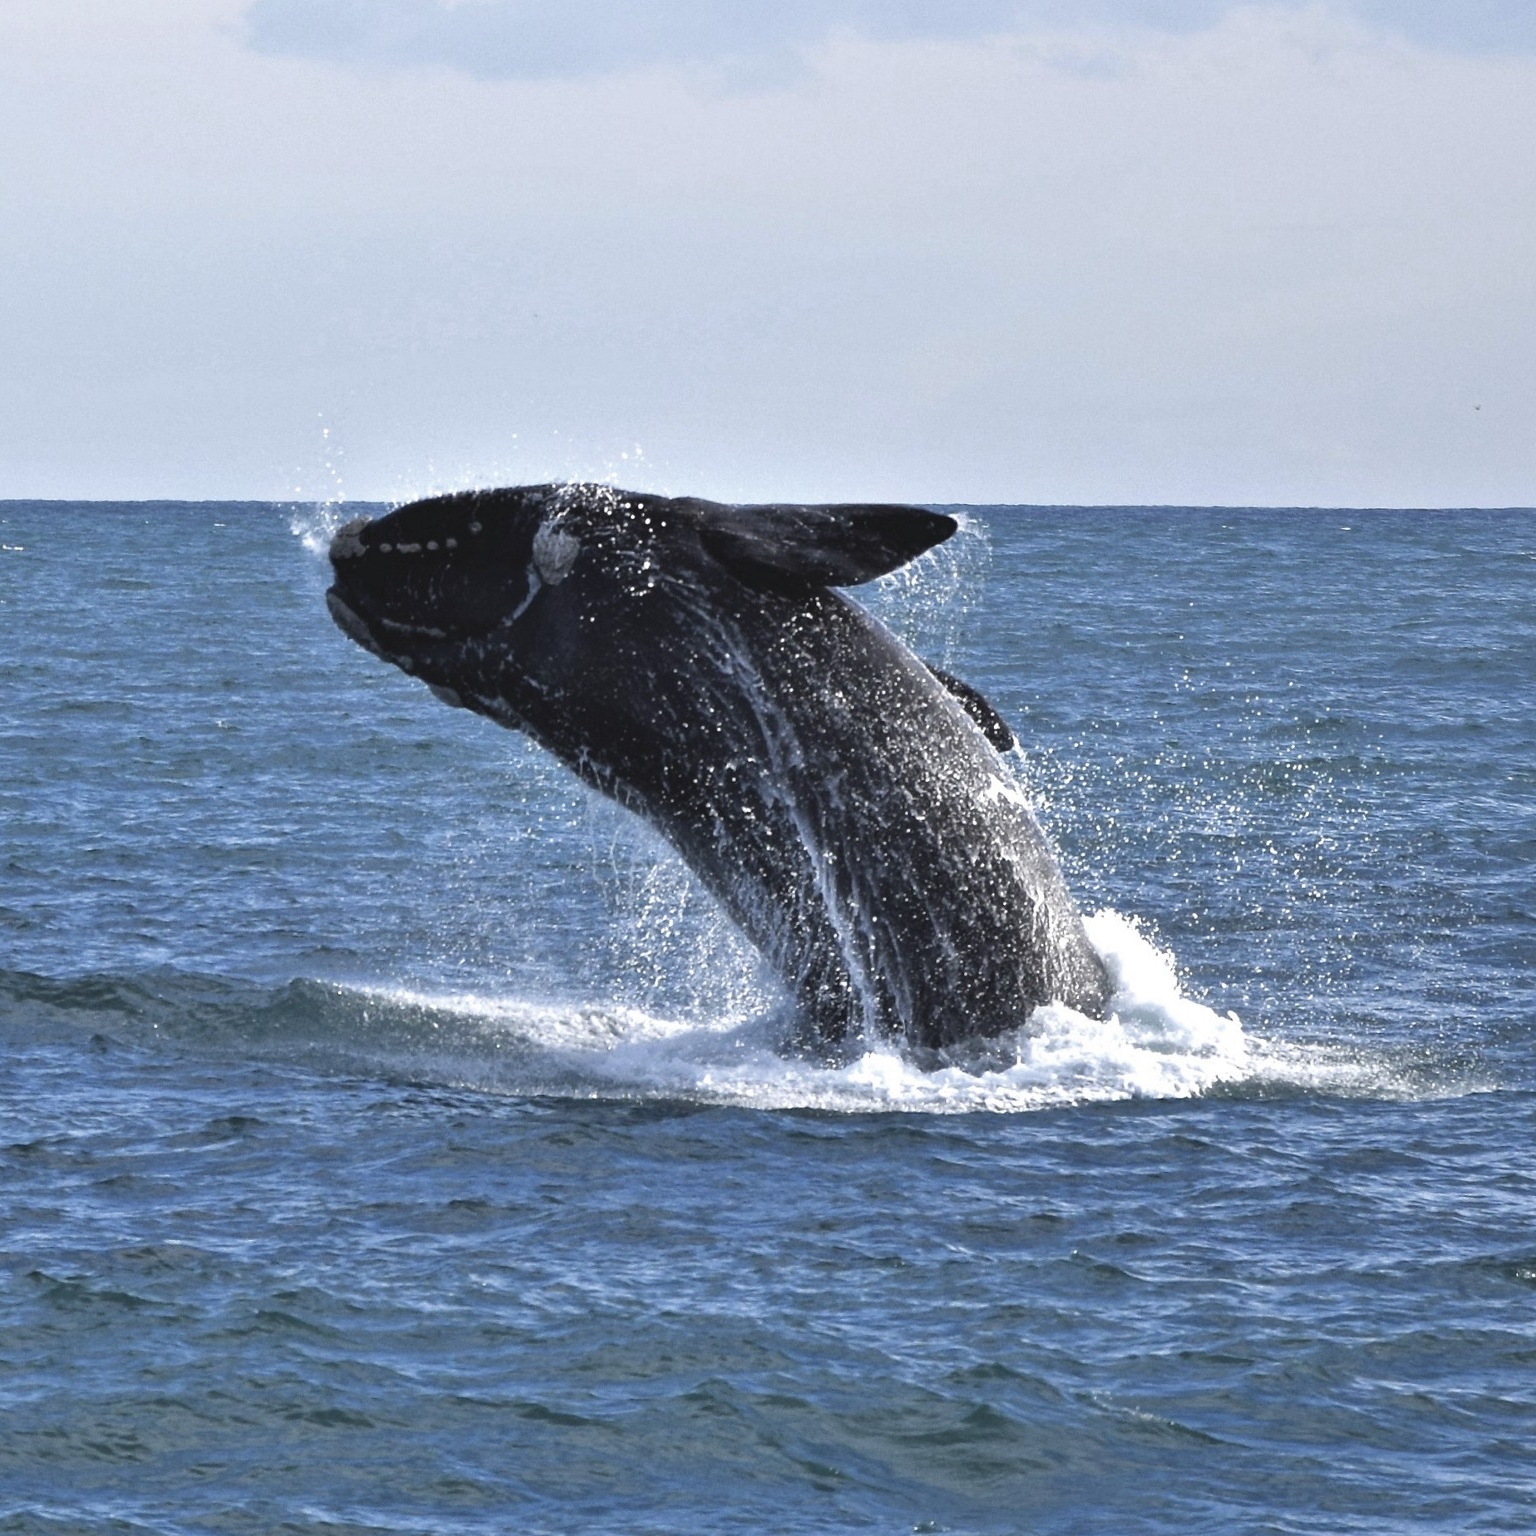 菲利普岛附近的南露脊鲸跃出海面 © John McFee/野生动物海岸巡游版权所有